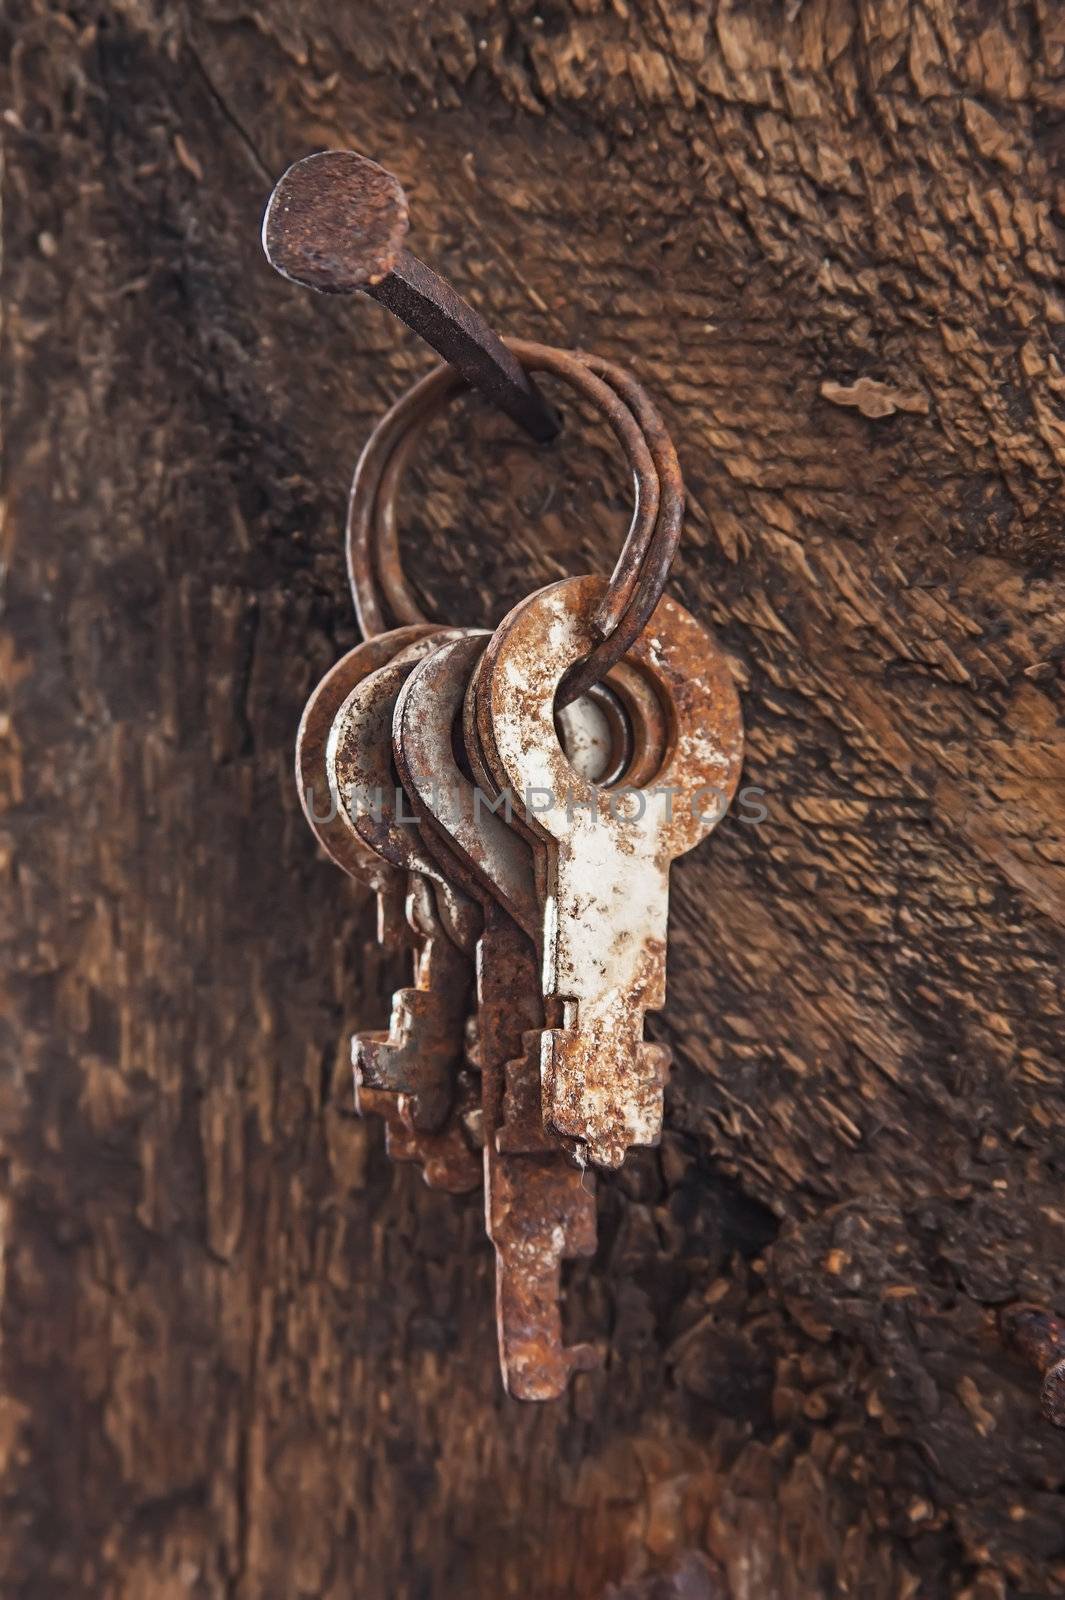 forgotten keys on an old nail by oleg_zhukov